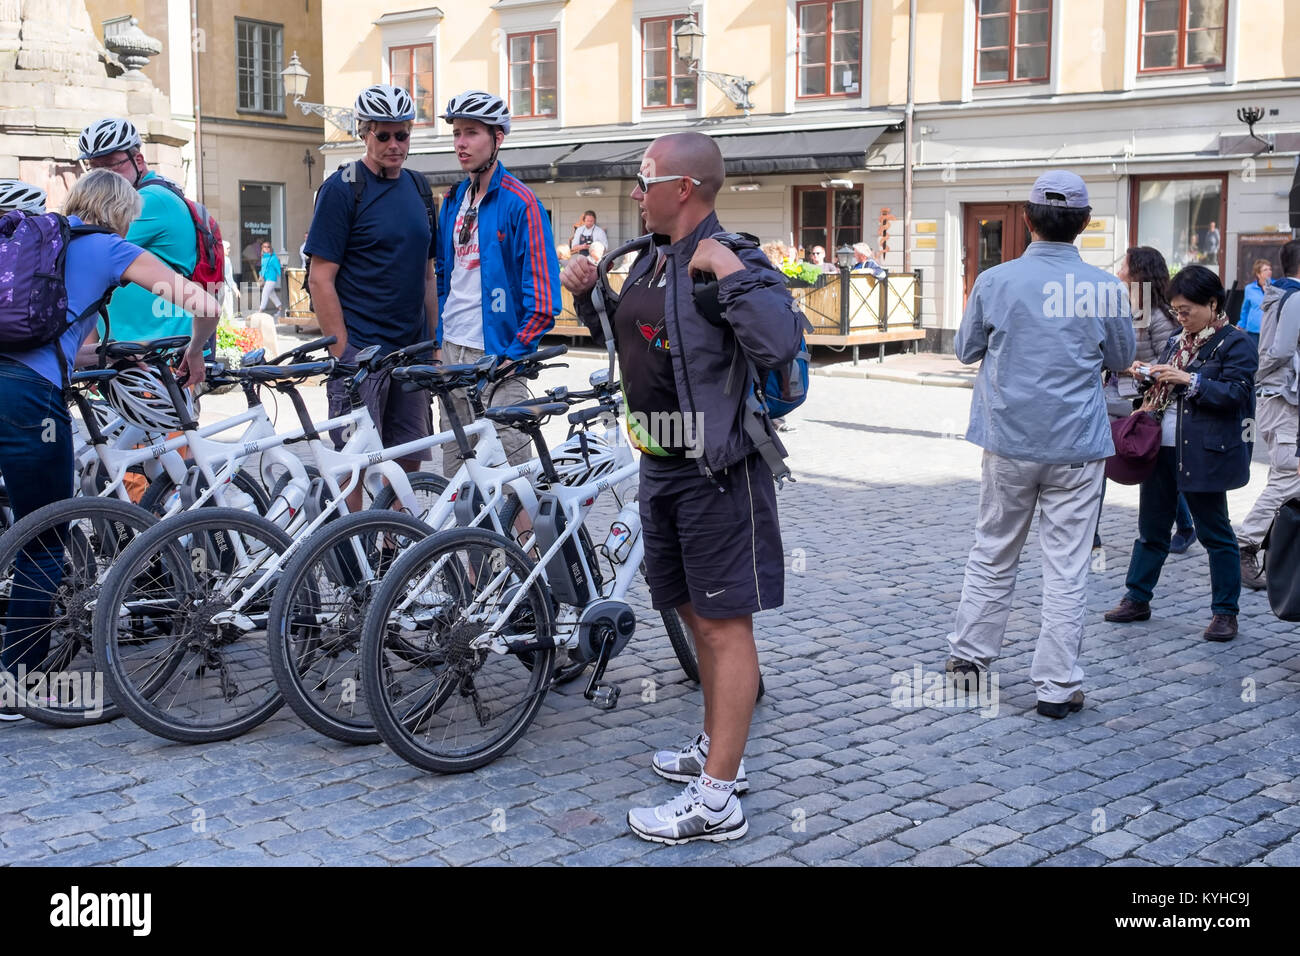 Stockholm Schweden bike tour Gruppe trifft auf einem öffentlichen Platz in Gamla Stan, der historischen Altstadt von Stockholm. Fahrräder stehen aufgereiht Stockfoto